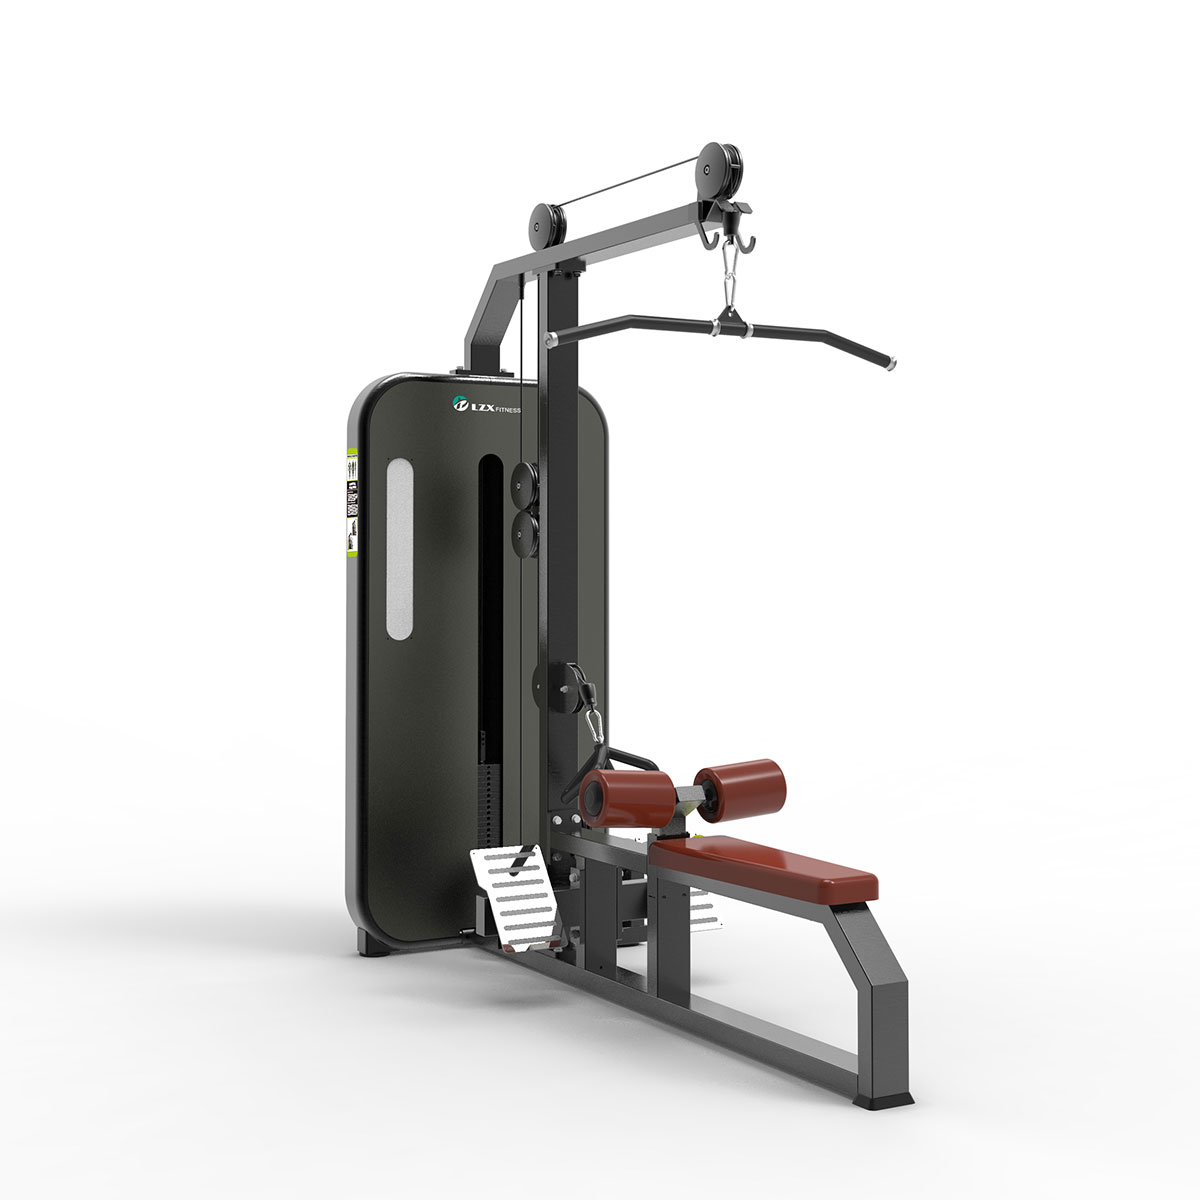 LZX-1055 gym machine